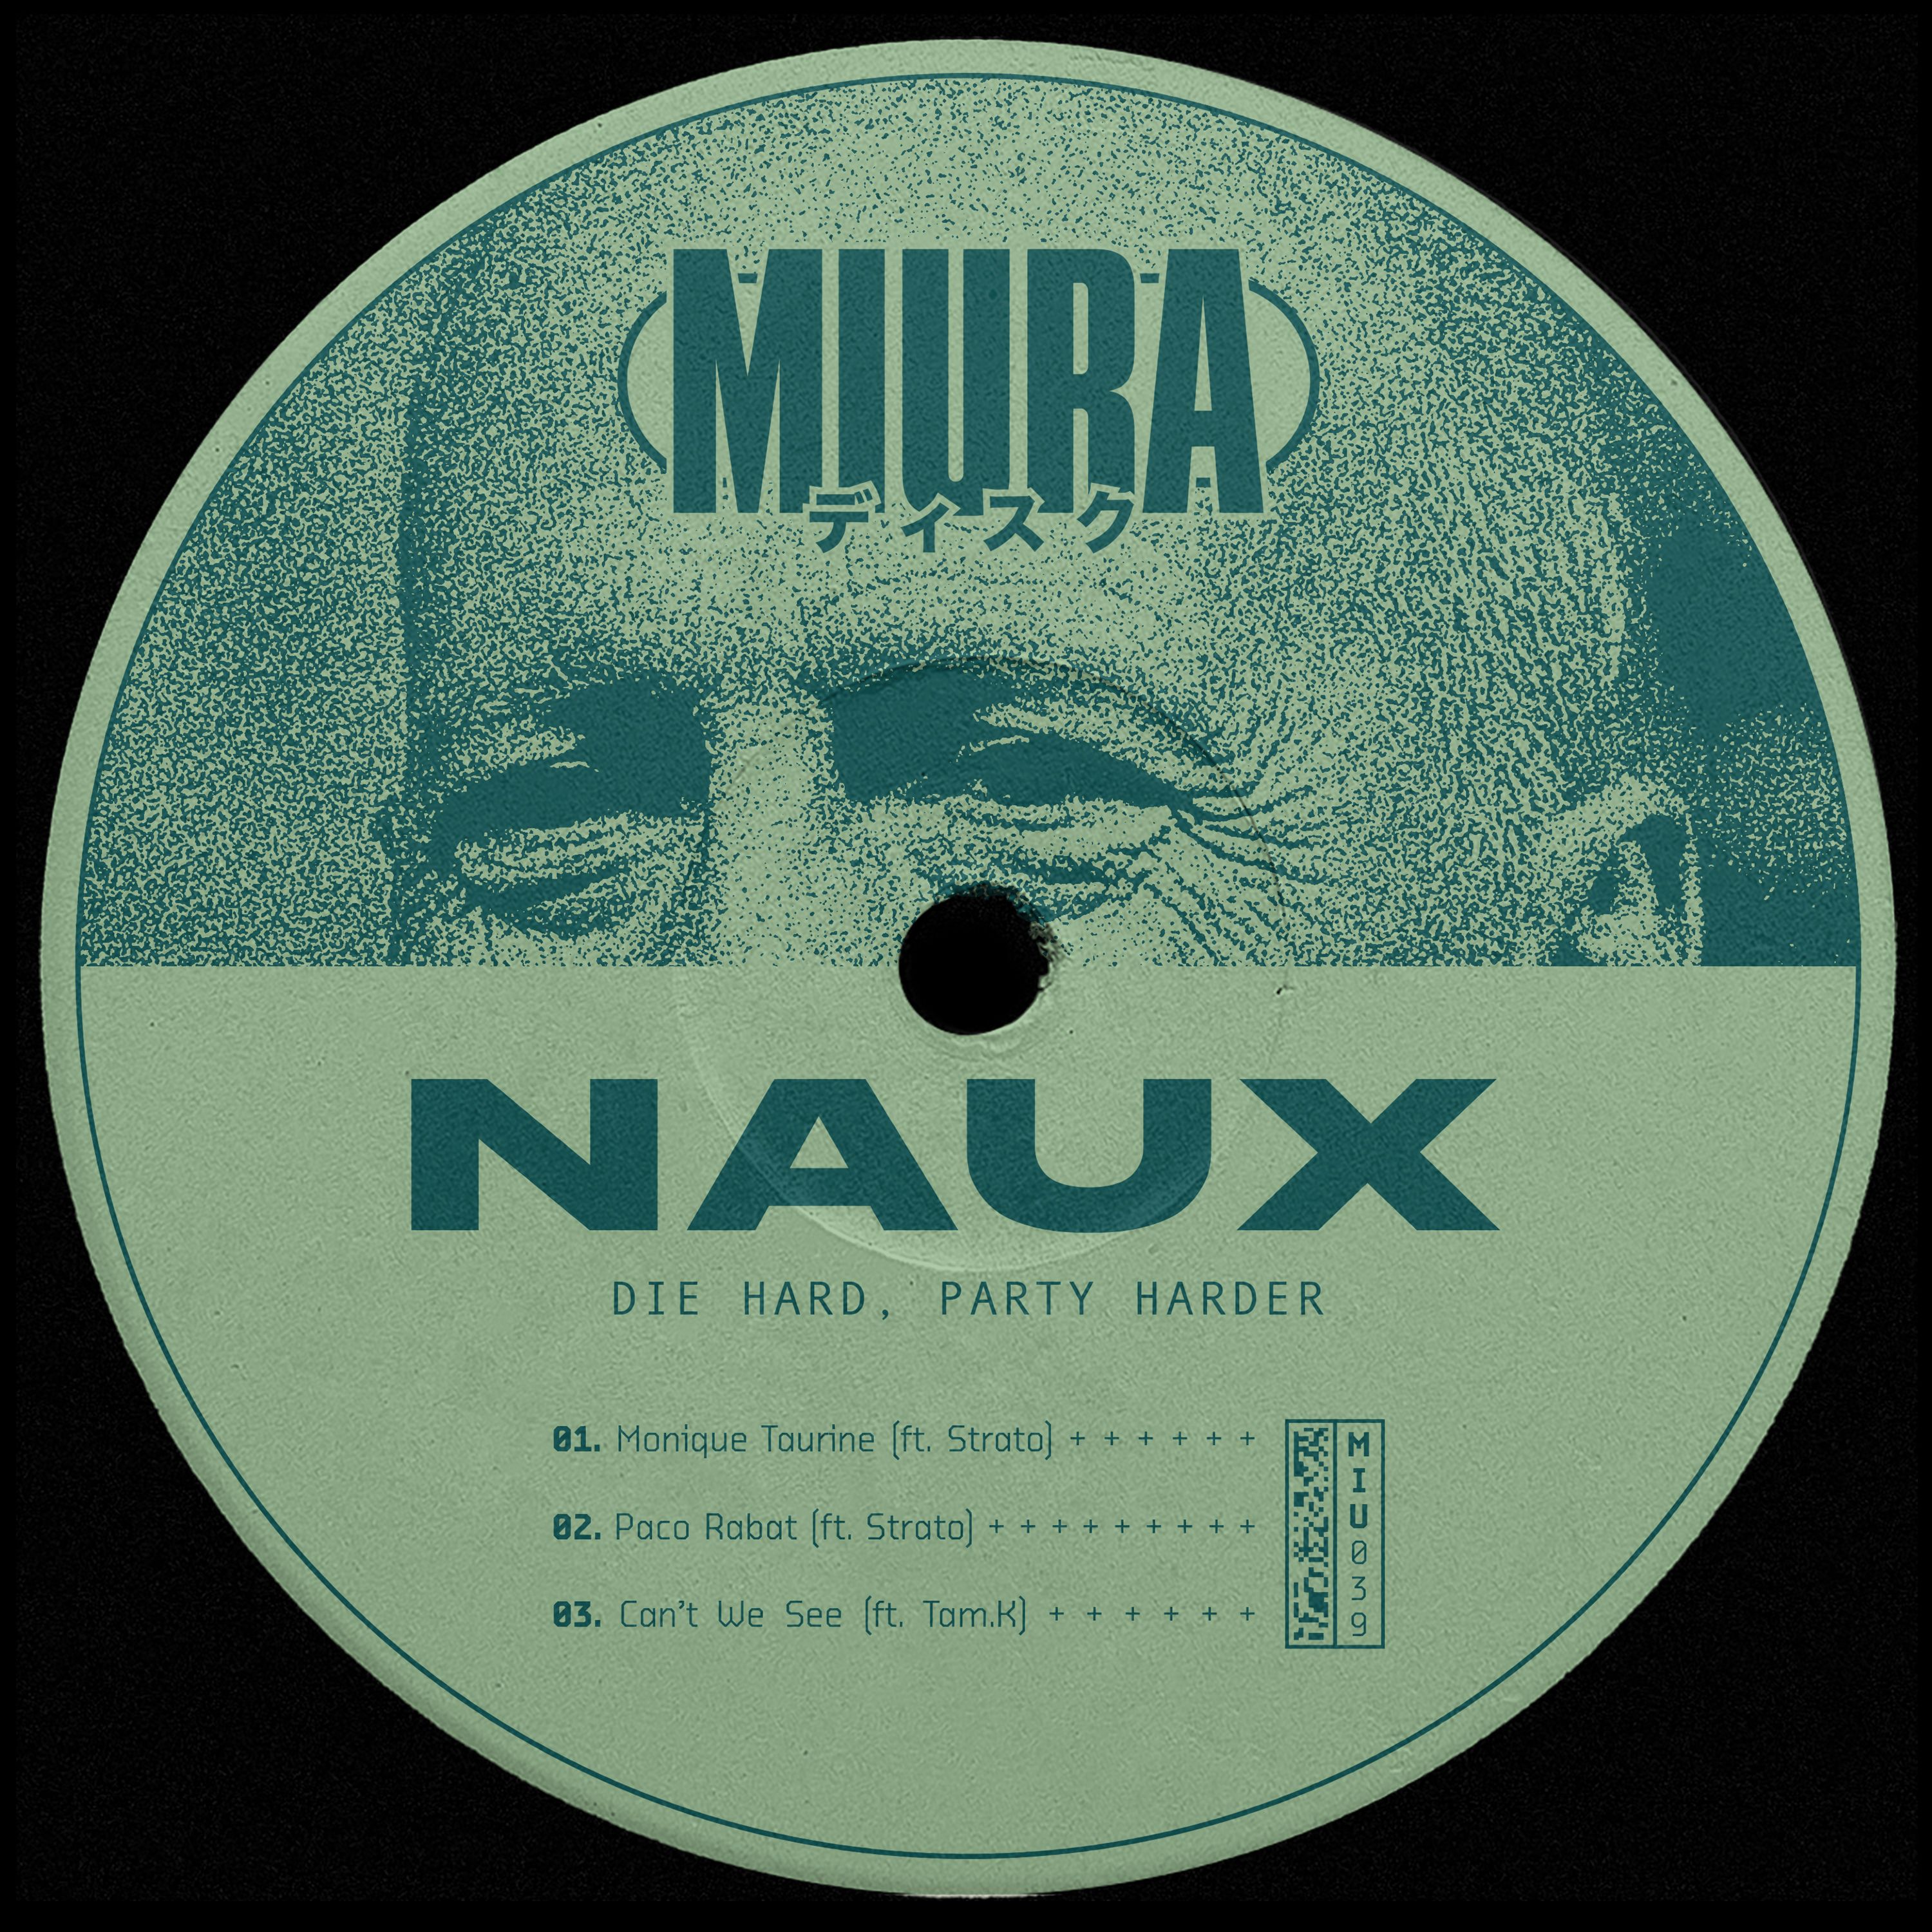 Ṣe igbasilẹ PREMIERE: Naux & Strato - Monique Taurine [Miura Records]